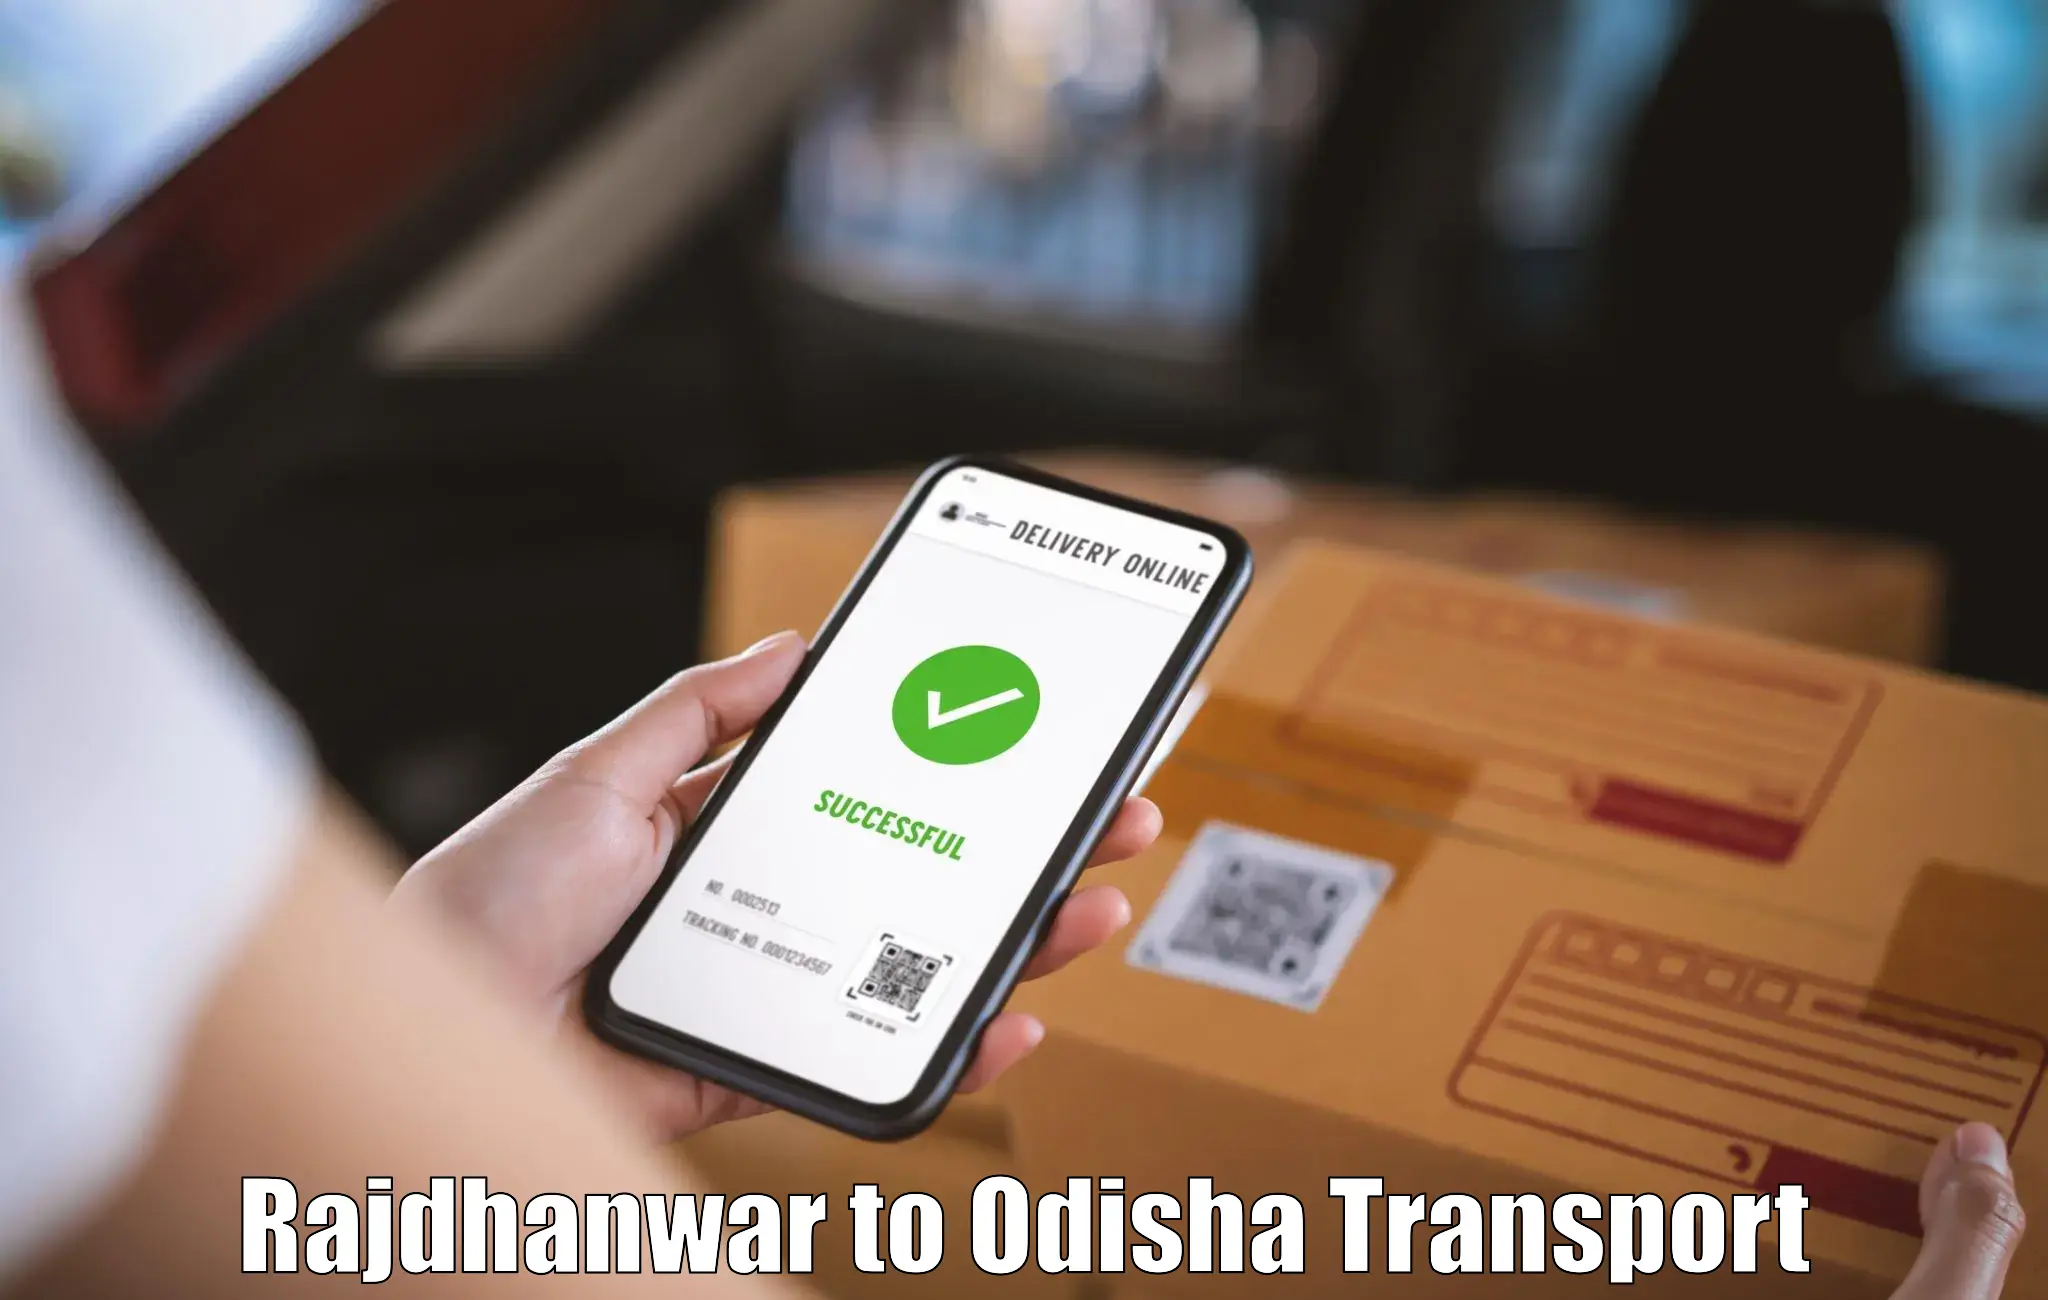 Daily transport service Rajdhanwar to Bhuban